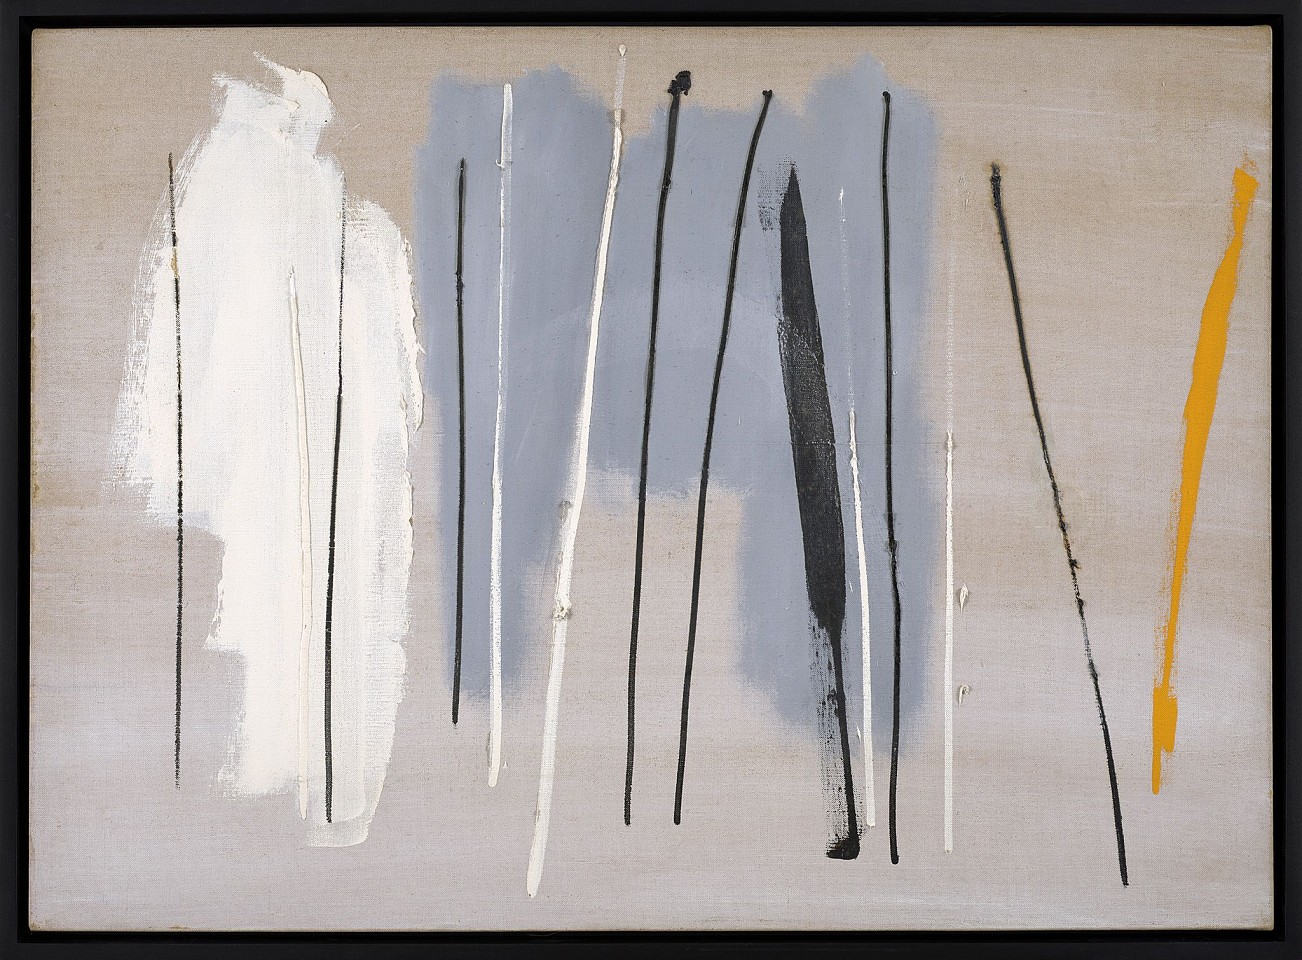 Edward Zutrau, Water Tree Images, 1960
Oil on linen, 28 5/8 x 39 1/4 in. (72.7 x 99.7 cm)
ZUT-00056